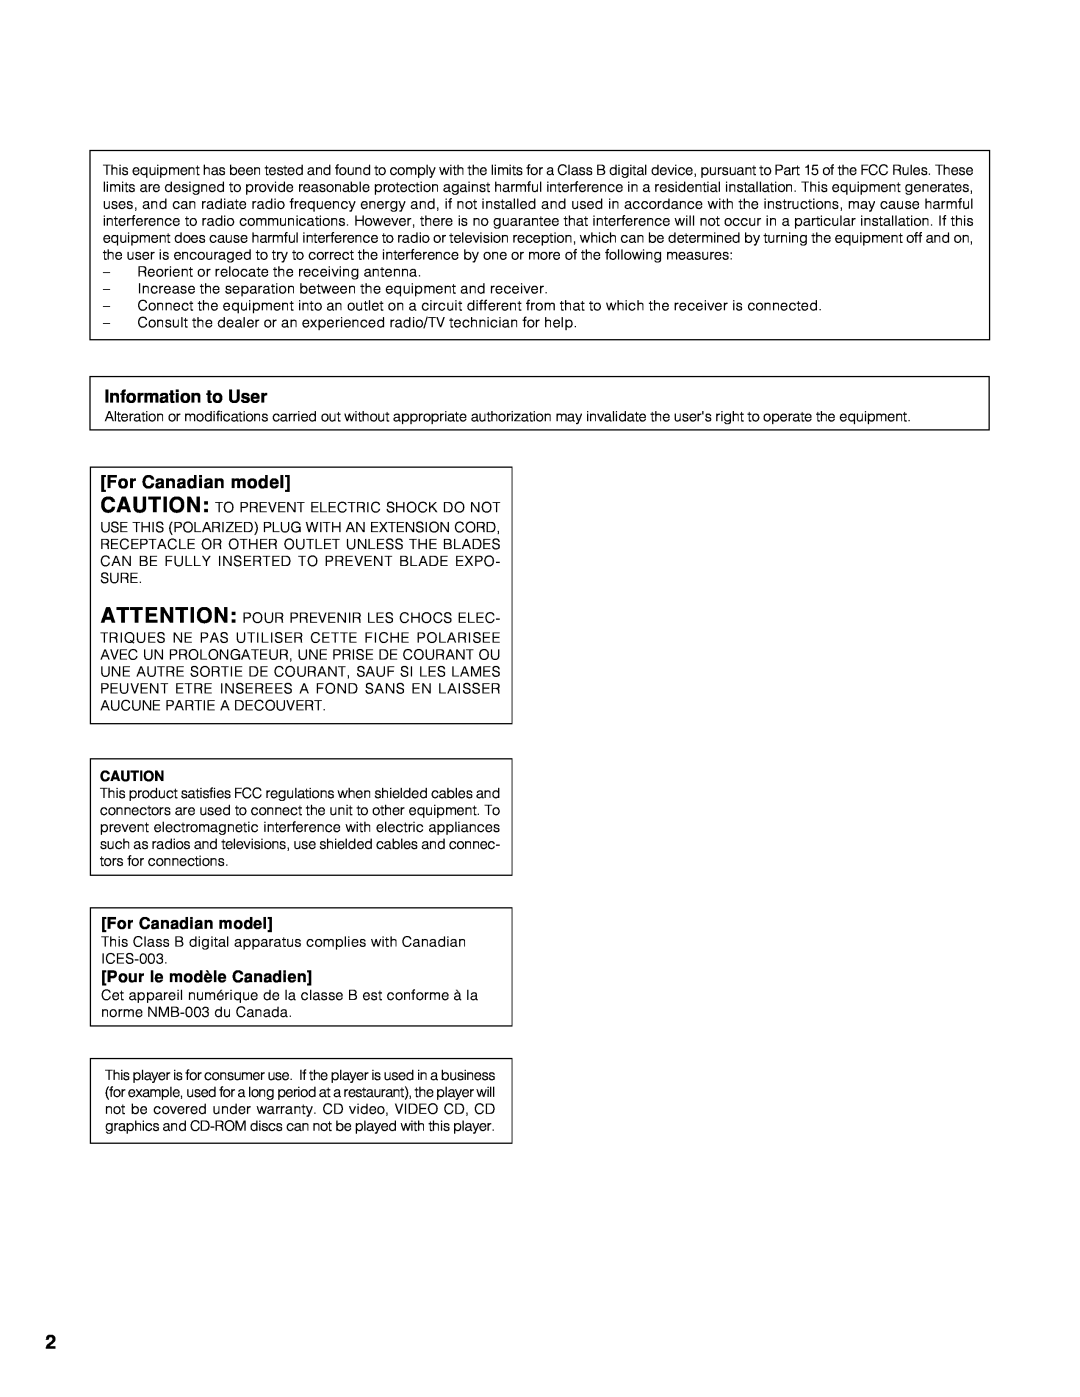 Marantz CC9100 manual Information to User, For Canadian model, Pour le modèle Canadien 